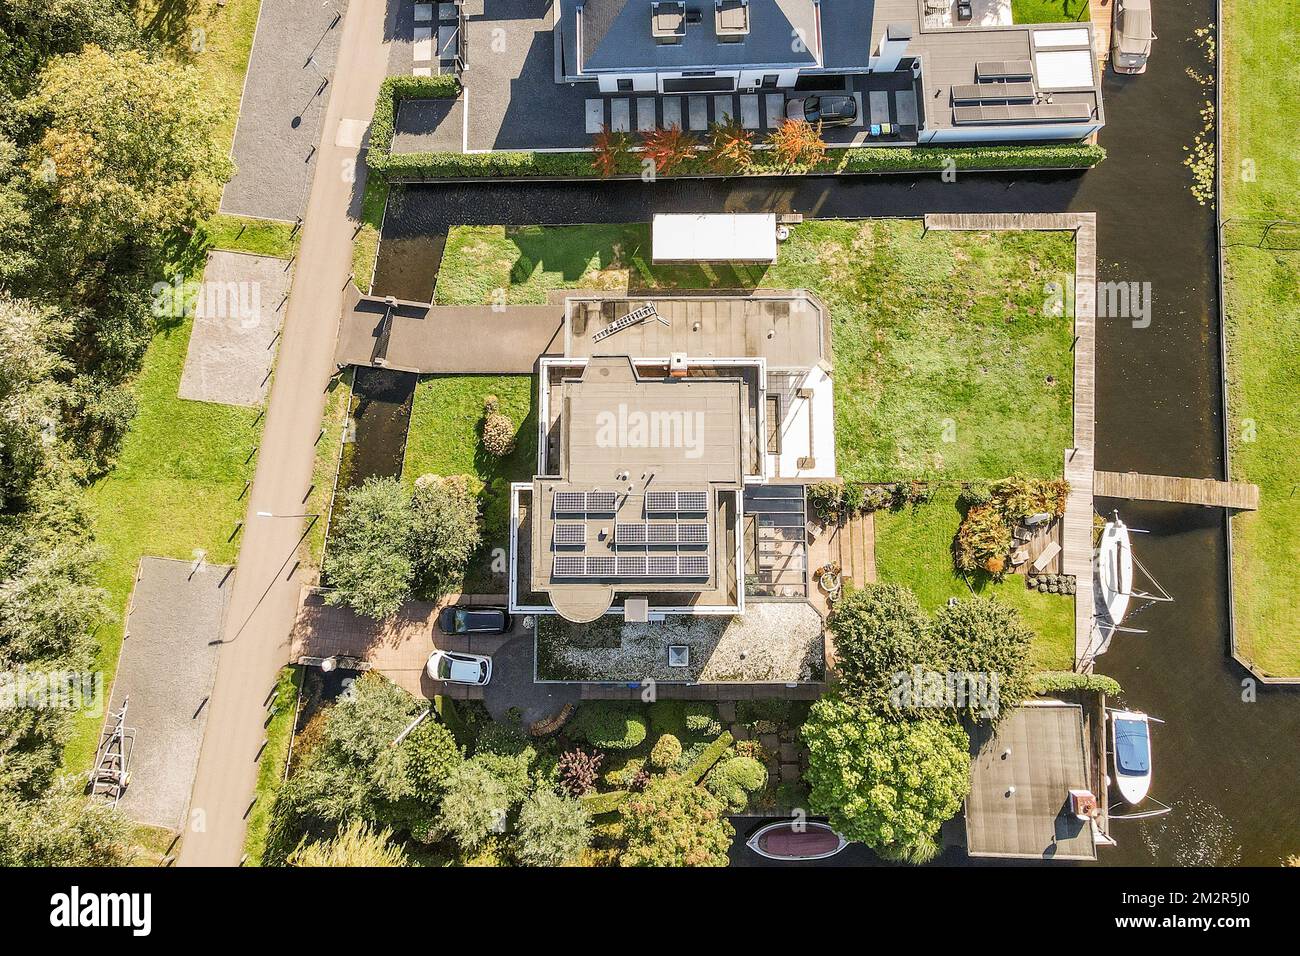 Ein Blick aus der Vogelperspektive auf ein Haus in der Mitte einer Wohngegend, von oben aufgenommen und die Umgebung dargestellt Stockfoto